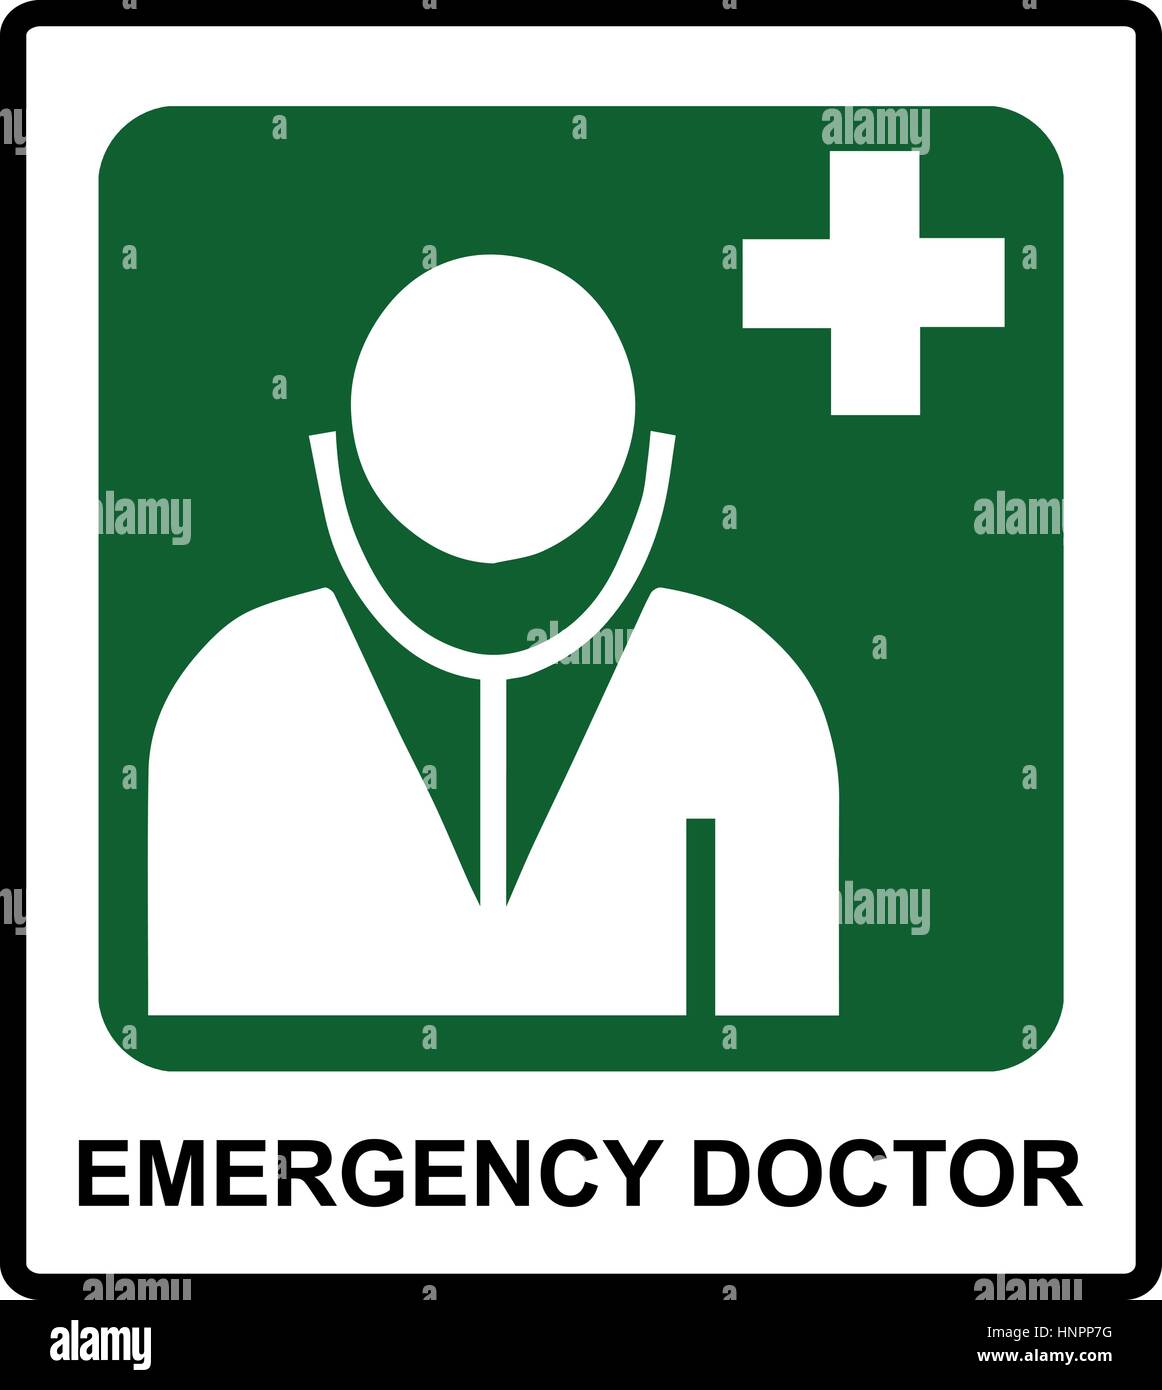 Sicheren Zustand Zeichen, Notfall Arztsymbol Aufkleber Beschriftung für öffentliche Plätze Vectror illustration Stock Vektor